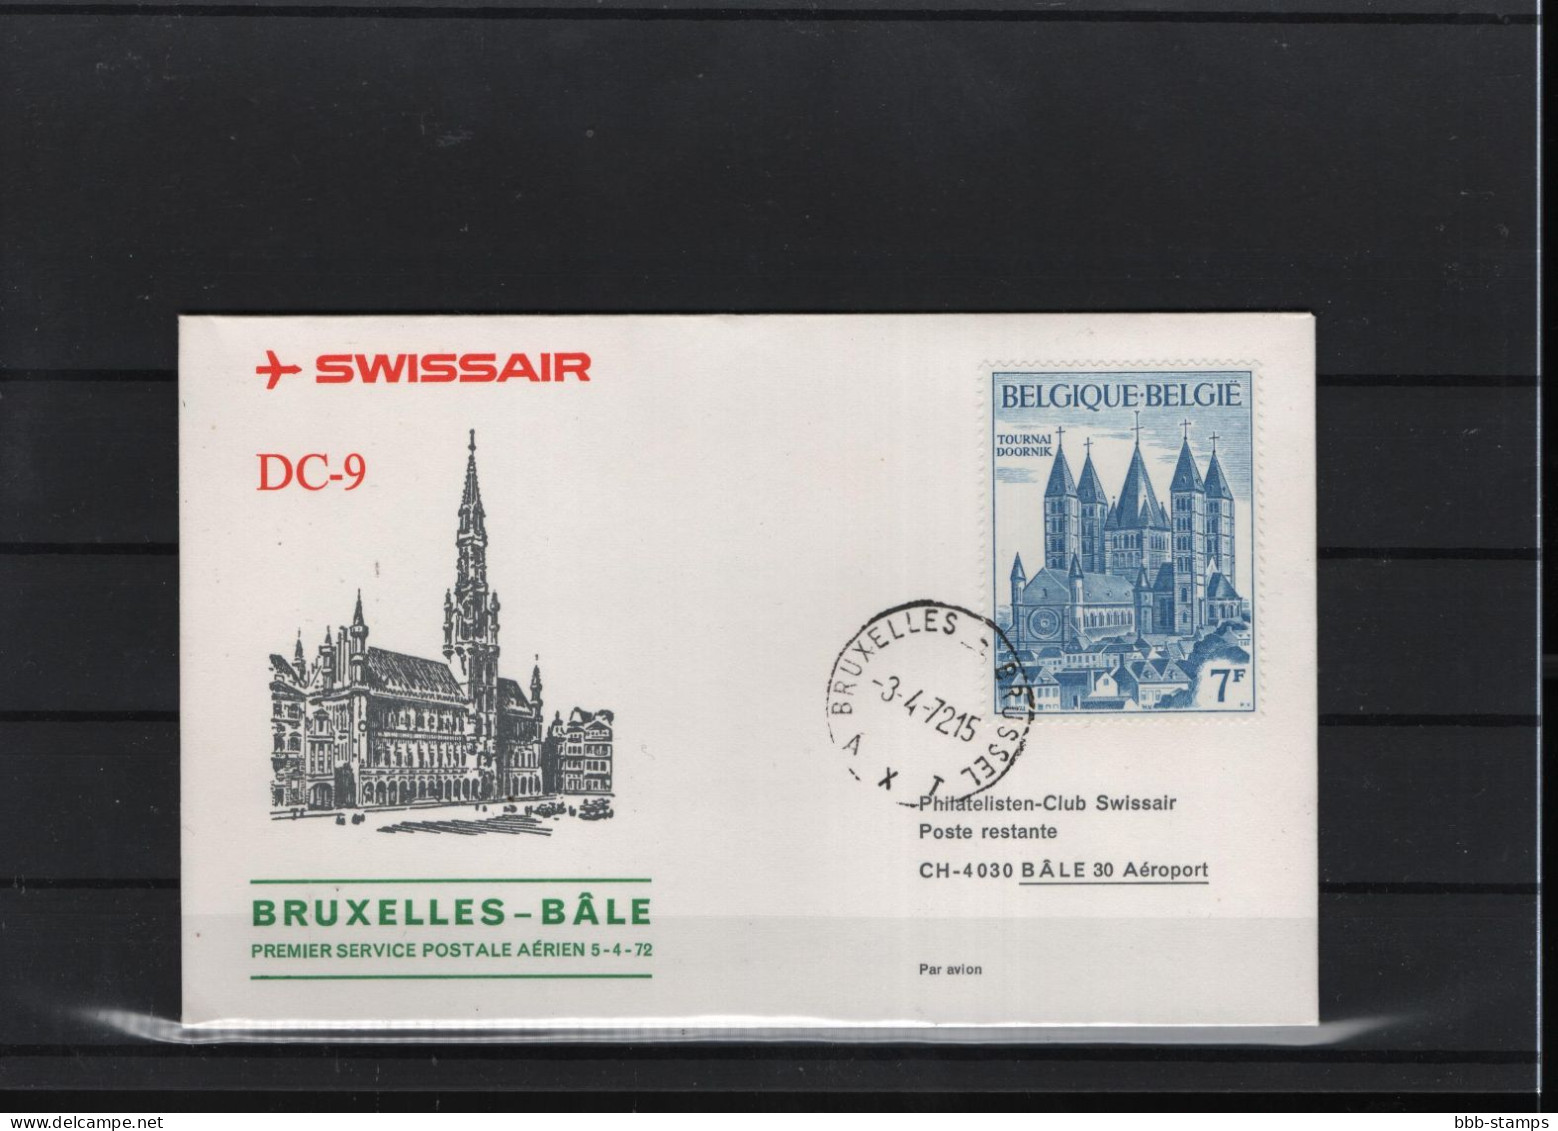 Schweiz Luftpost FFC Swissair  3.4.1972 Brussel - Basel - Premiers Vols